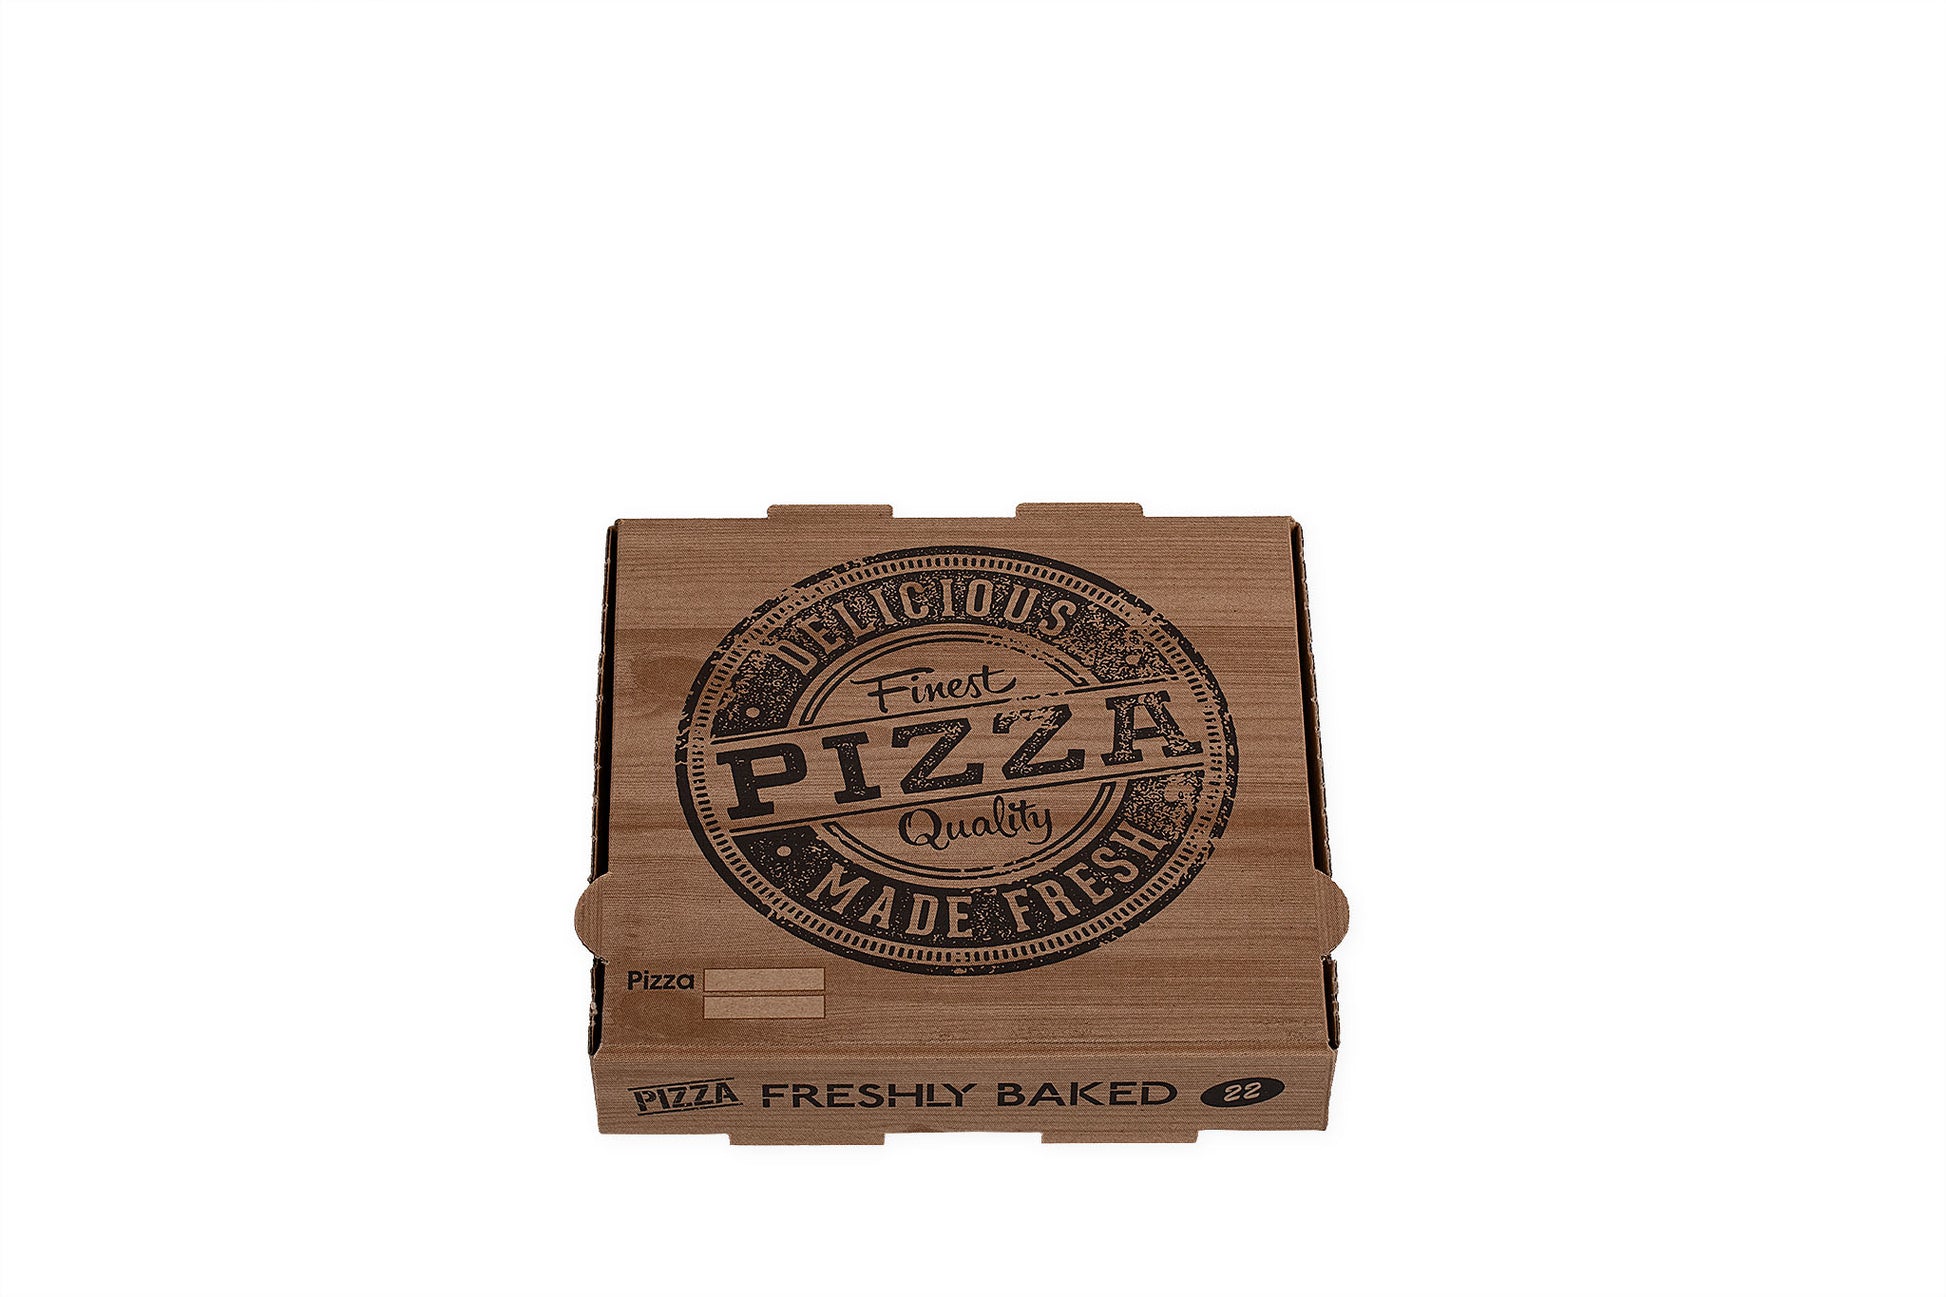 Auf dem Bild ist ein brauner 22er Pizzakarton in der Größe 22 x 22 x 4cm in der Draufsicht zu sehen. Aufgedruckt ist ein Logo welches einem Stempelabdruck ähnelt mit dem Text: "Finest Pizza Quality, Delicious Made Fresh". Vertrieben durch die Malik Verpackungen GmbH Hanau